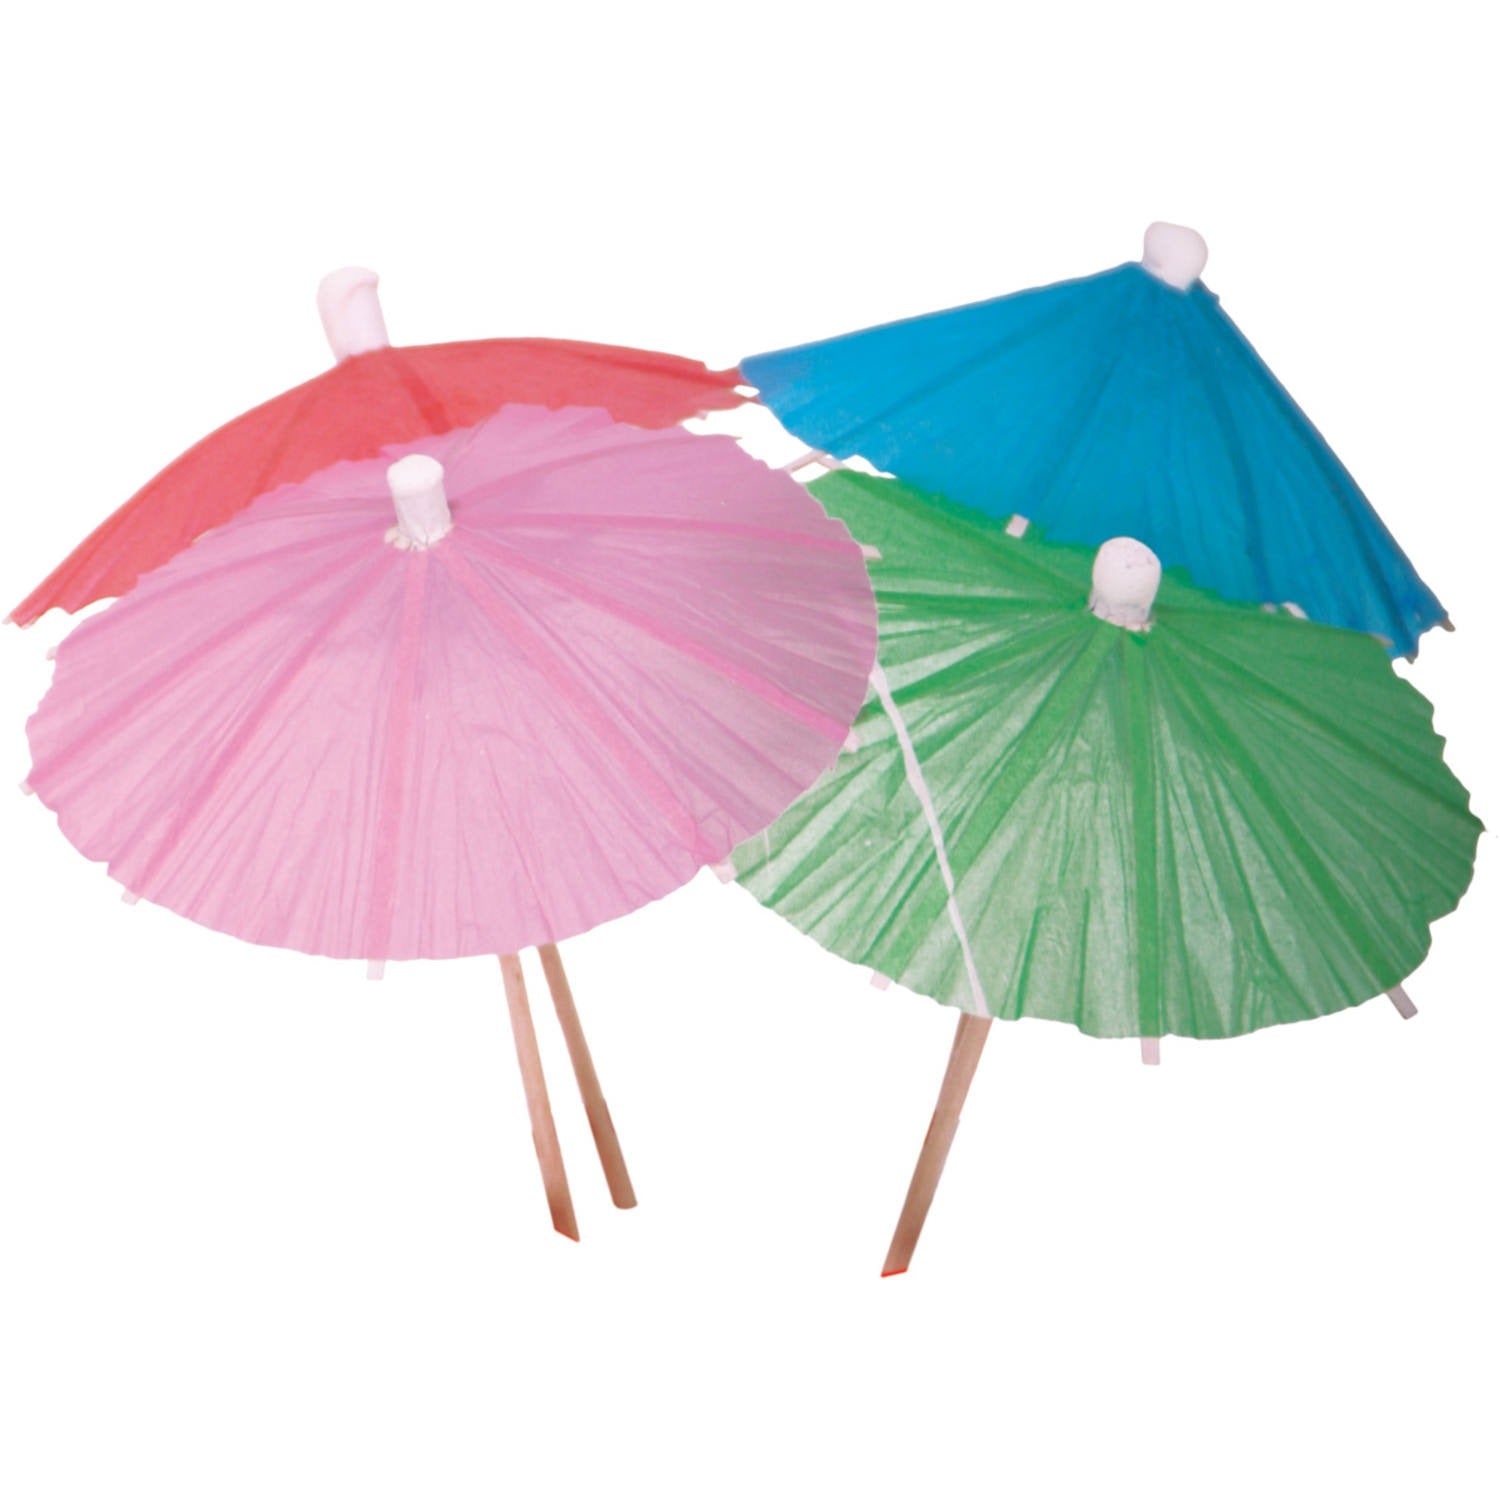 Wooden sticks, colored umbrellas, 15 pcs